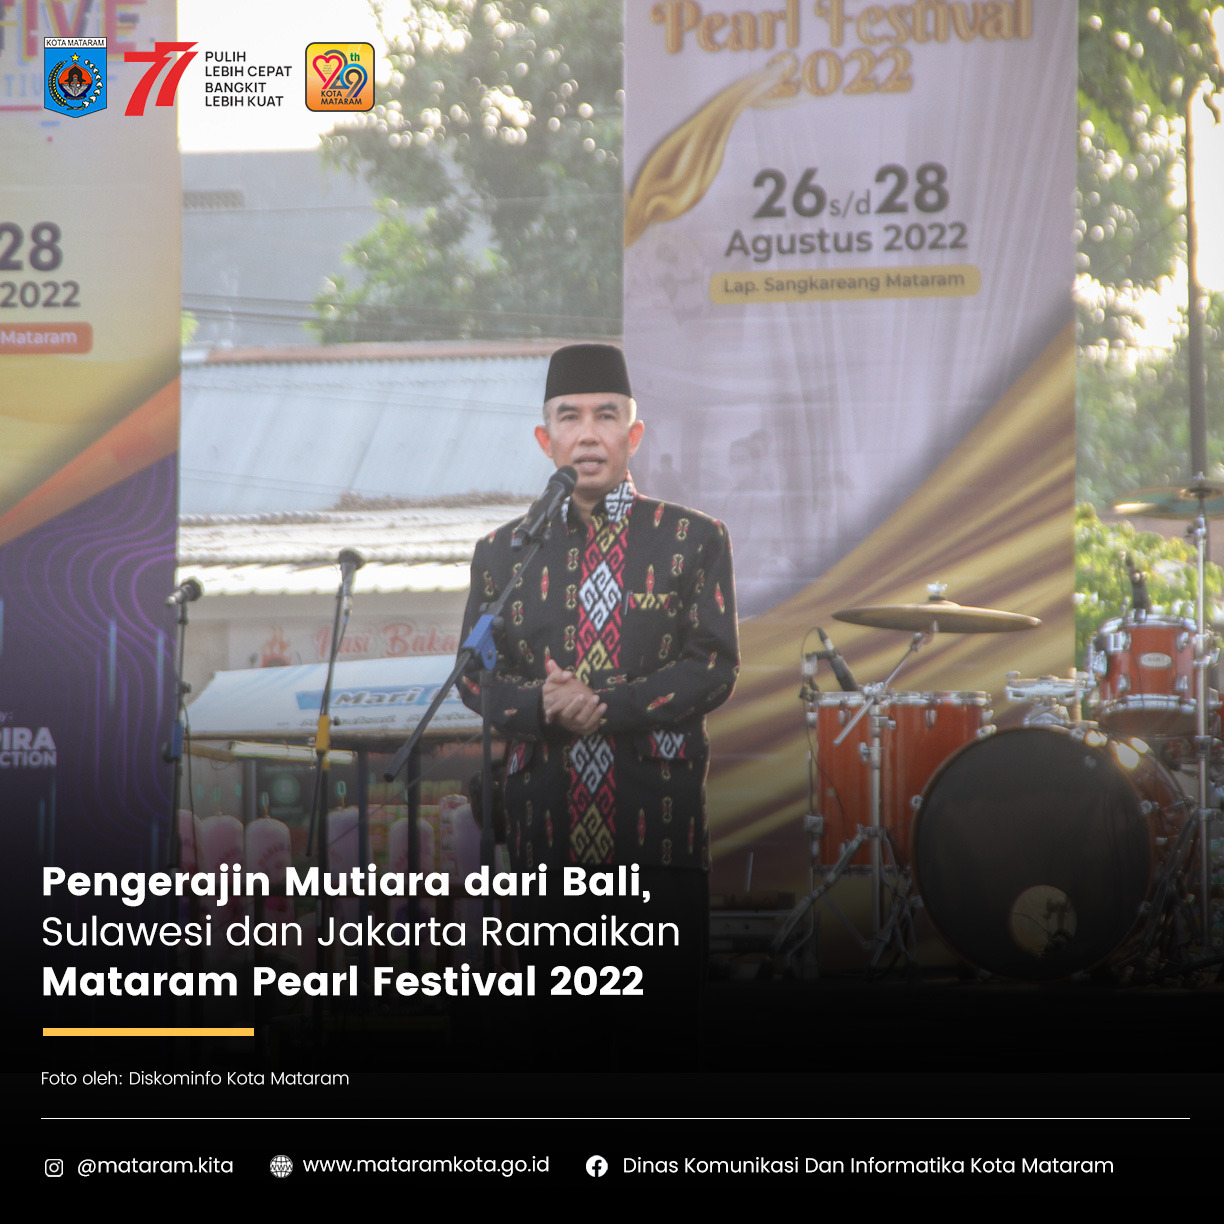 Pengerajin Mutiara dari Bali, Sulawesi dan Jakarta, Ramaikan Mataram Pearl Festival